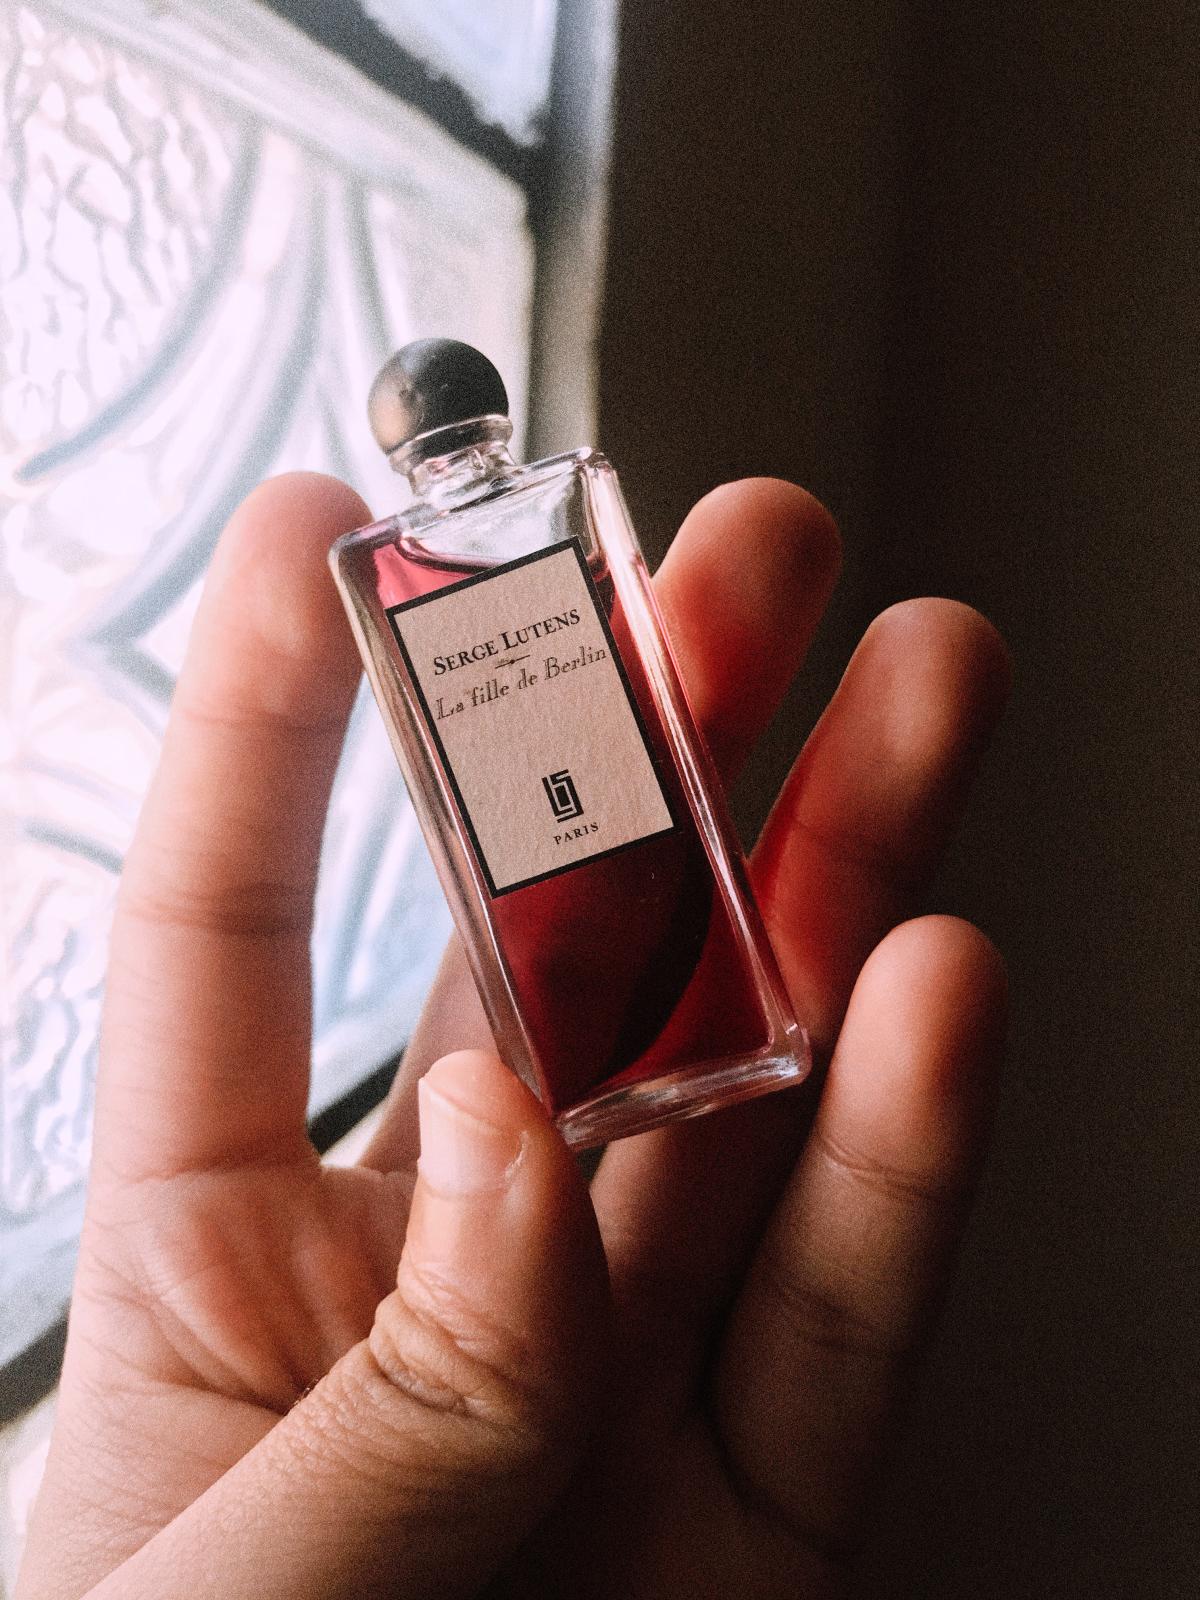 La Fille de Berlin Serge Lutens perfume - a fragrance for women and men ...